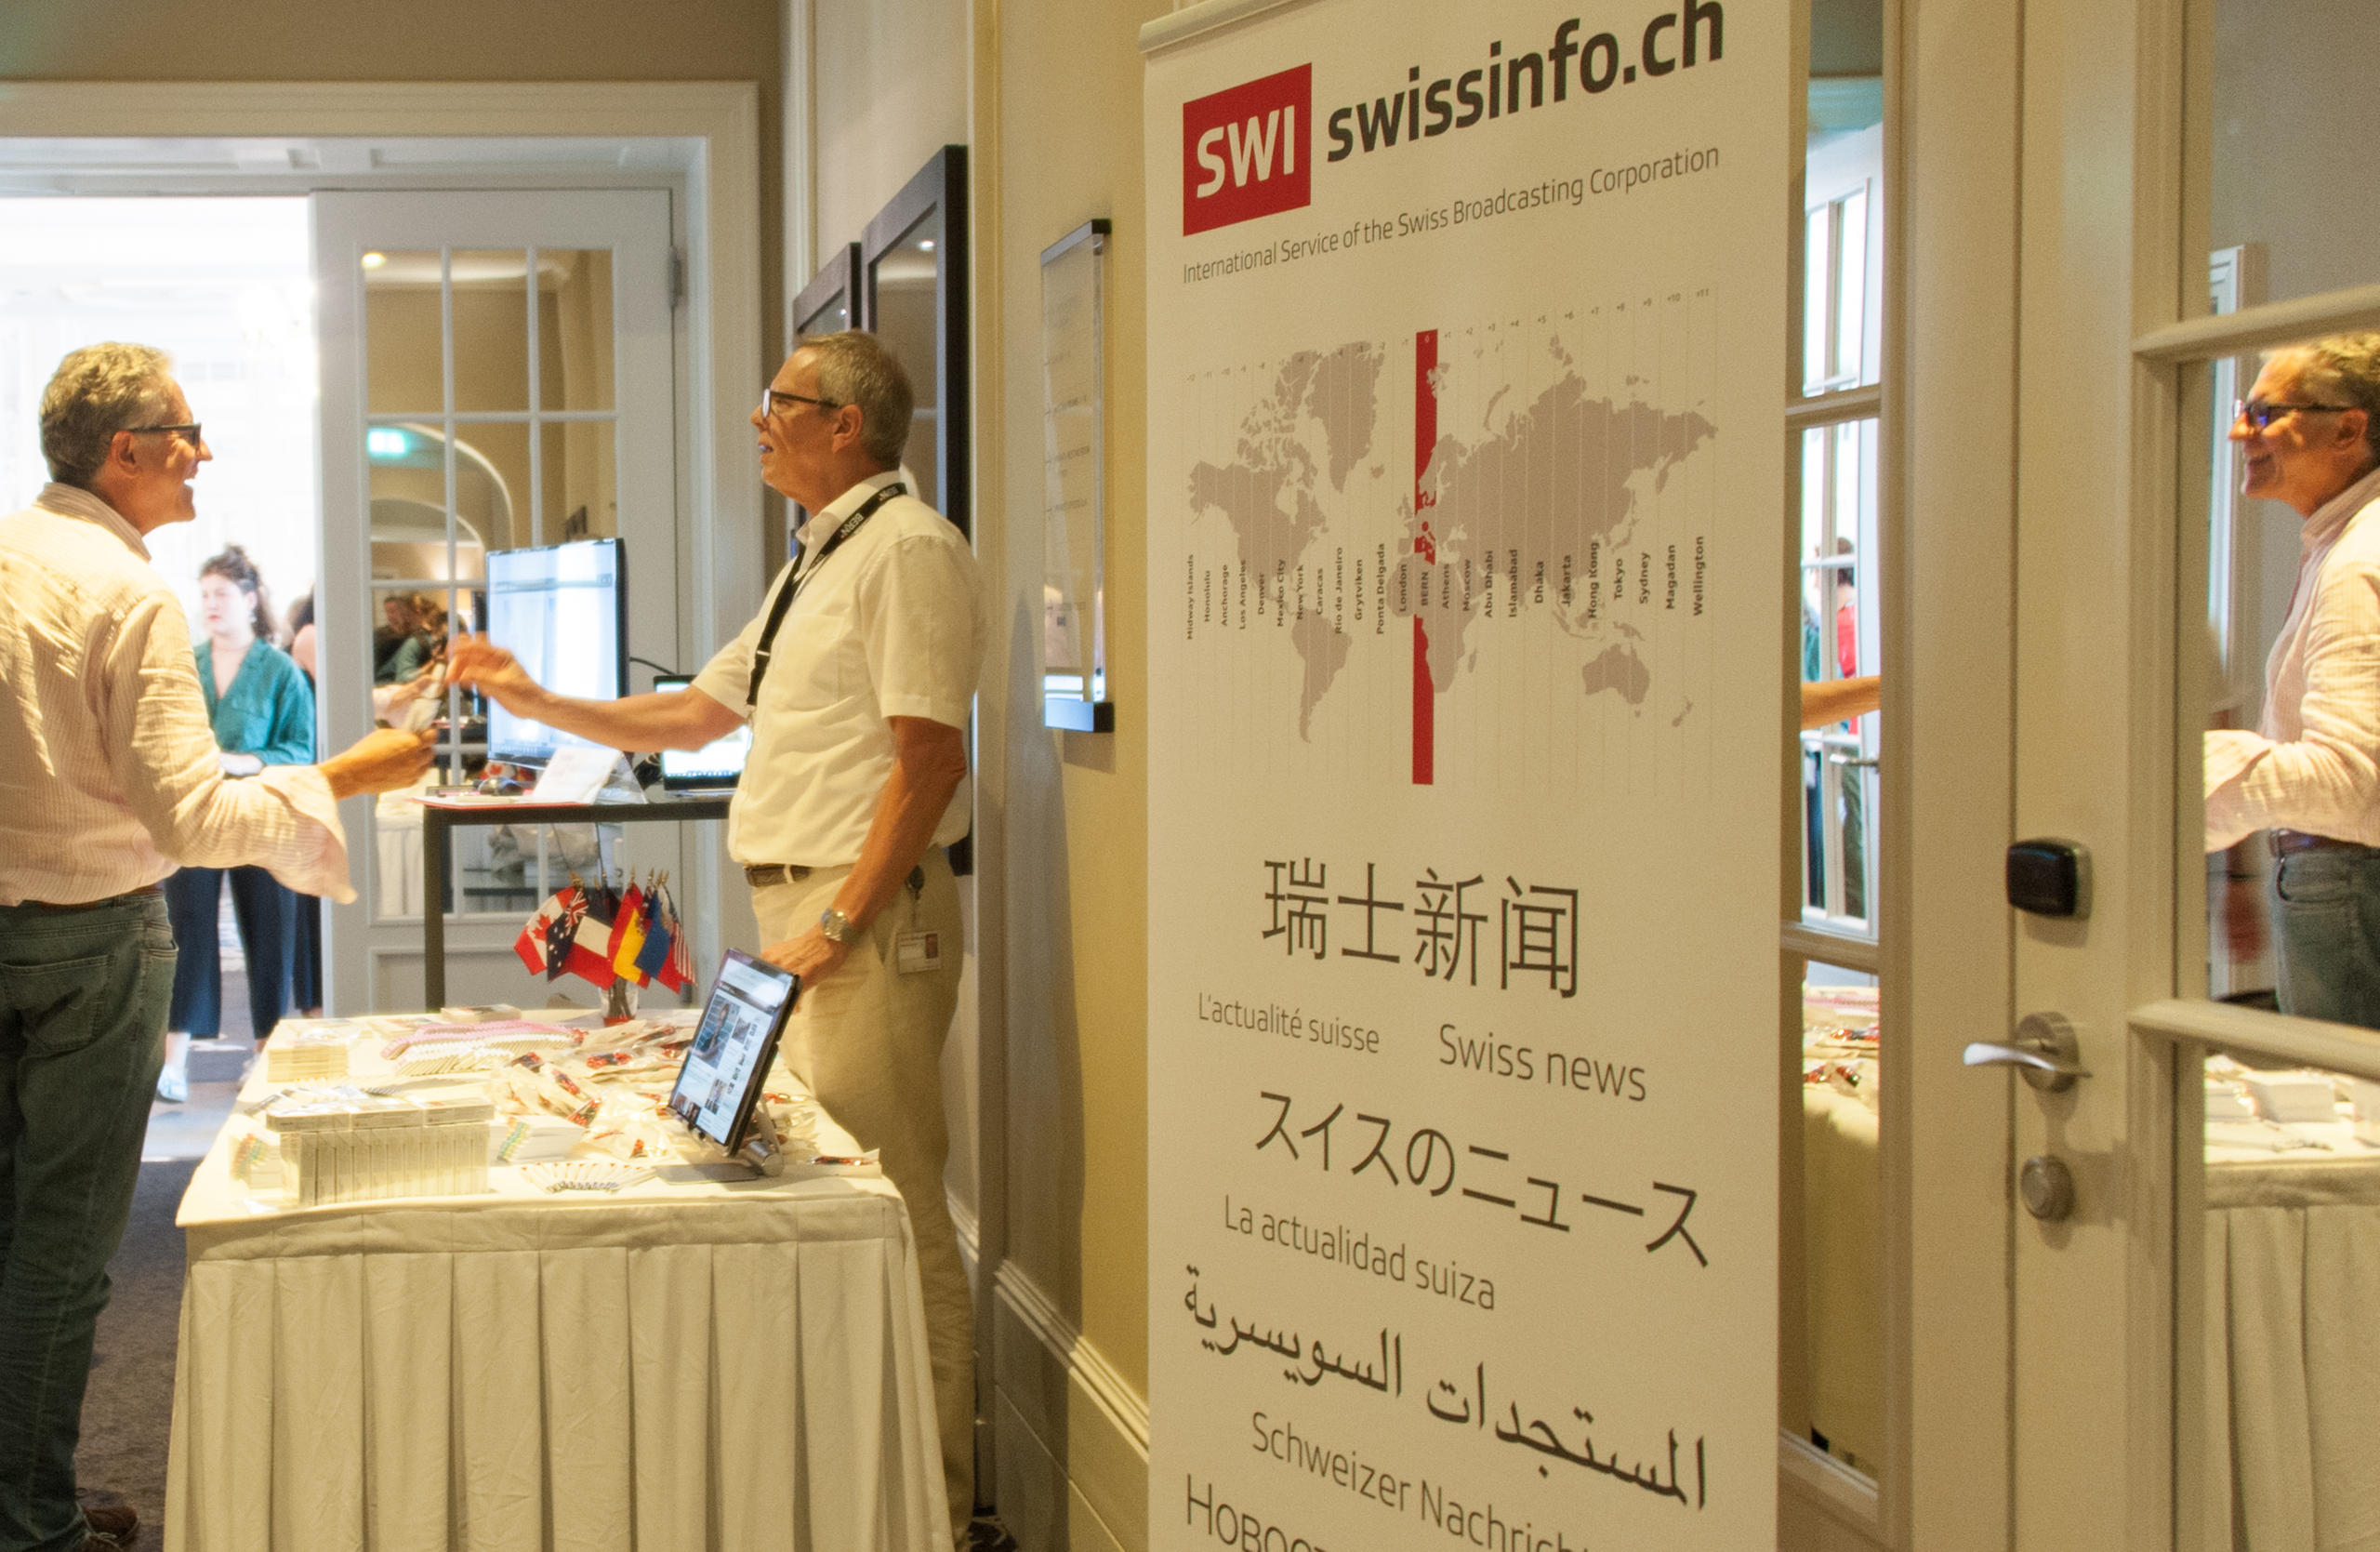 作為伯恩首屆全球記者-真實故事獎的媒體合作夥伴，瑞士資訊swissinfo.ch在開幕式上設有宣傳站點。